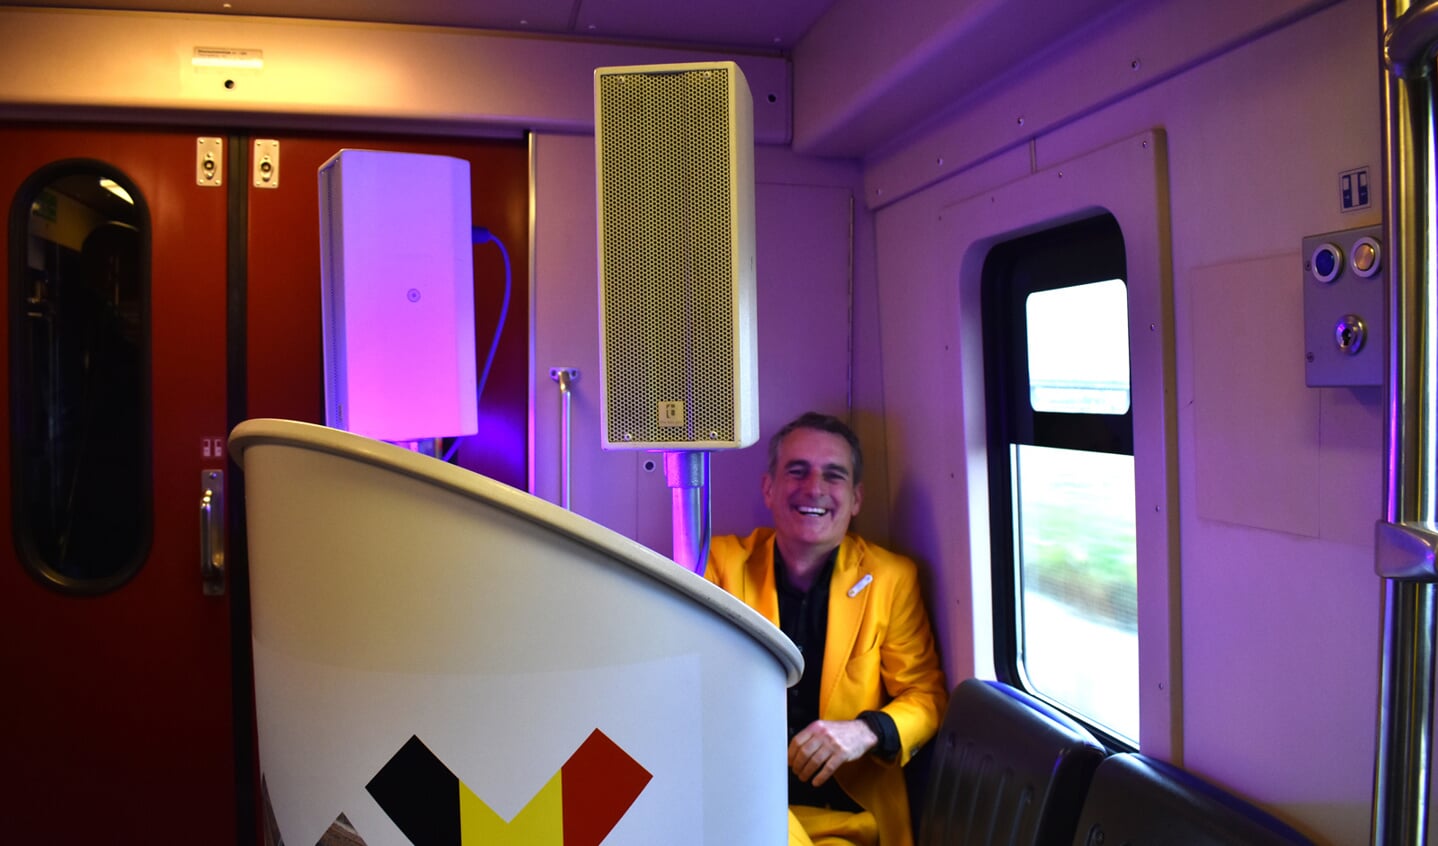 Maandag 9 april reed er voor het eerst een trein over het hsl-spoor tussen Breda en Antwerpen en vice versa. Regionale bestuurders en ondernemers reisden mee om het belang van deze verbinding te duiden.